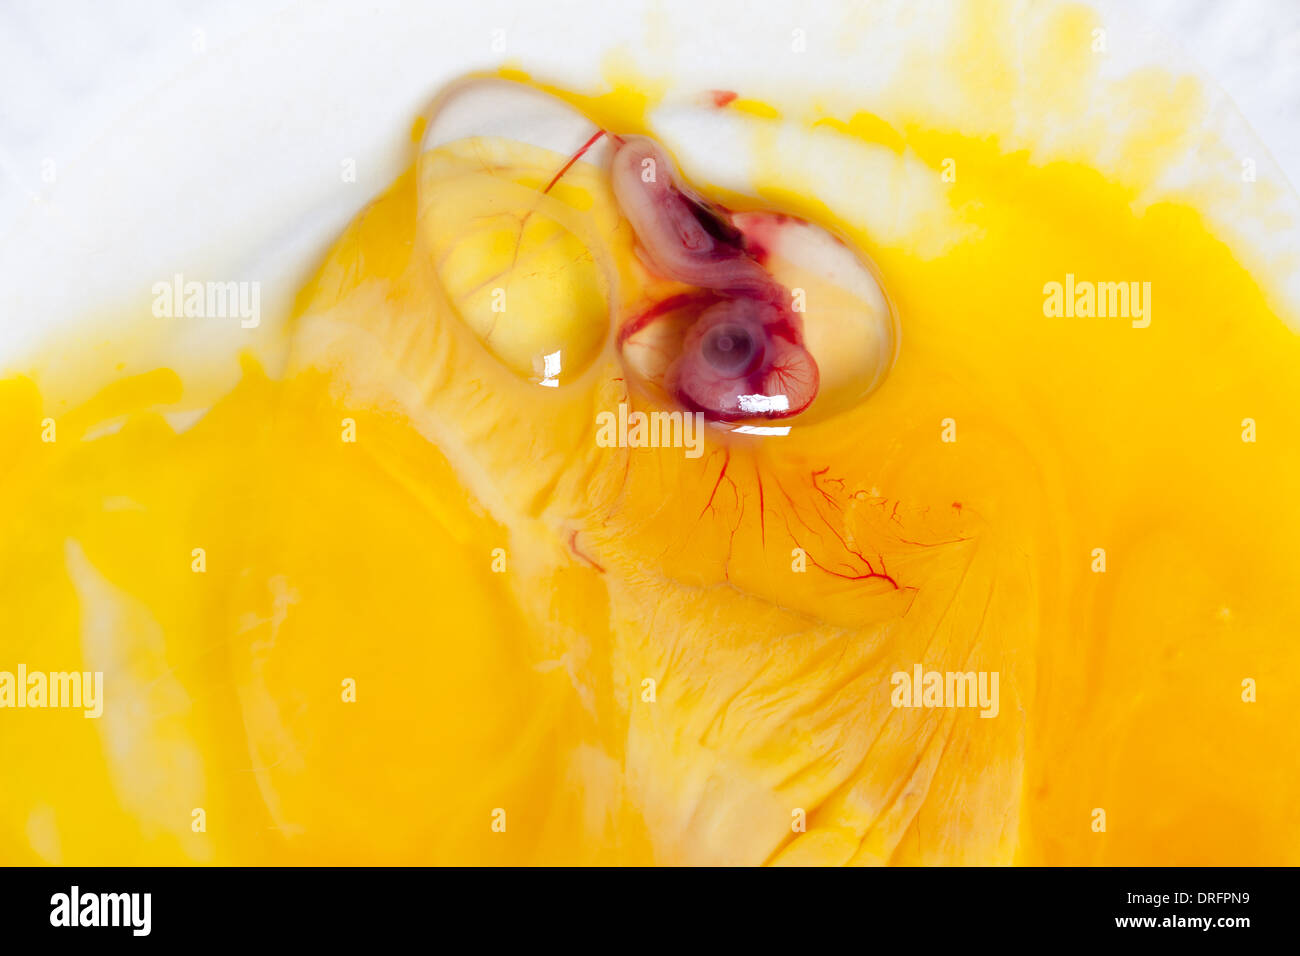 Embryon d'un caneton ou chick 9 jours après l'incubation, l'oeil est clairement visible (pas de cruauté envers les animaux fait pour cette image). Banque D'Images